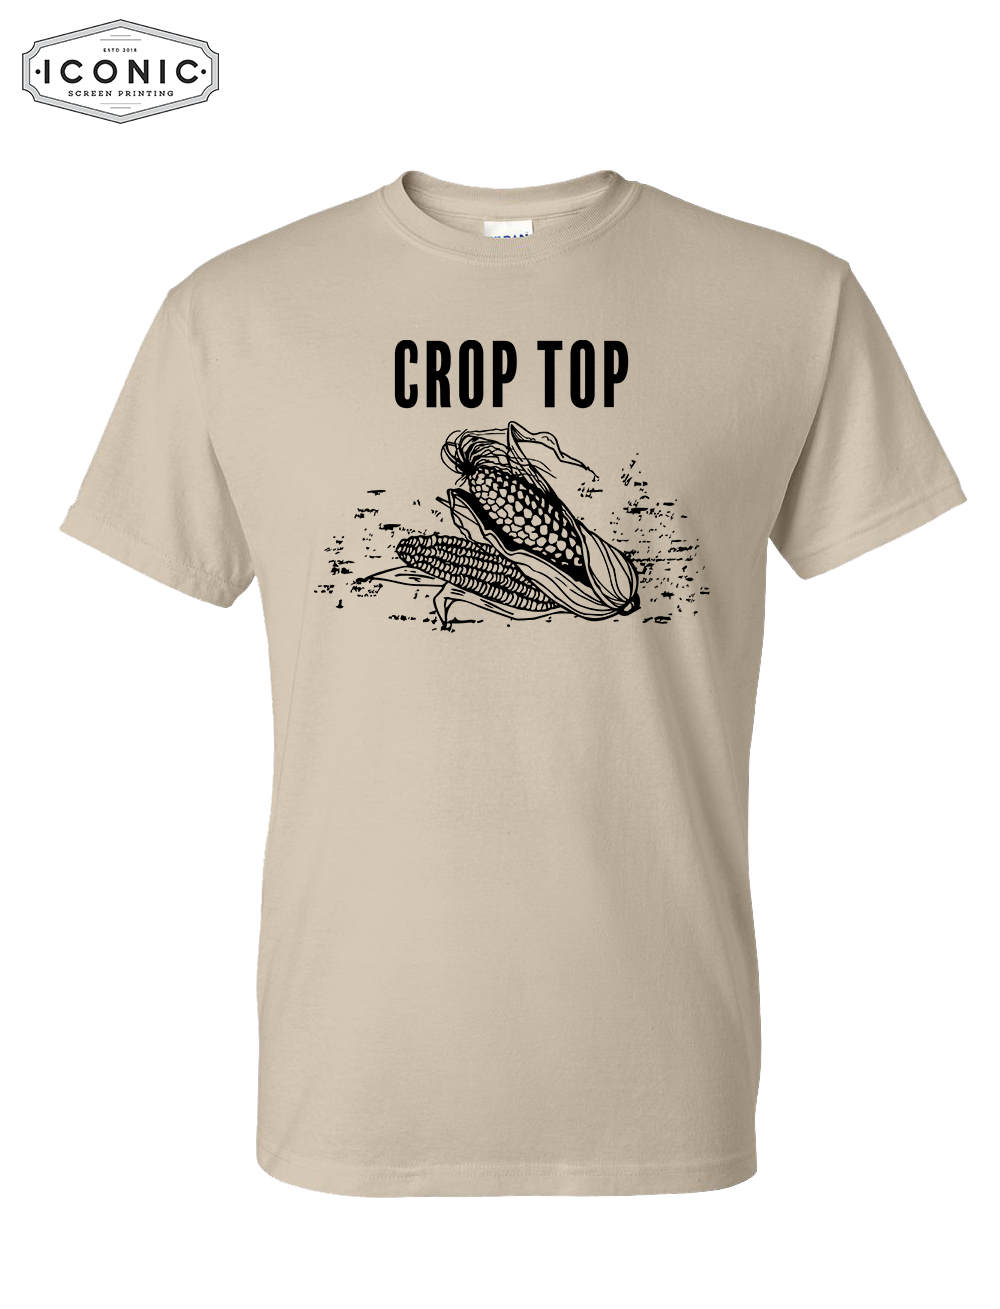 CROP TOP - DryBlend T-Shirt